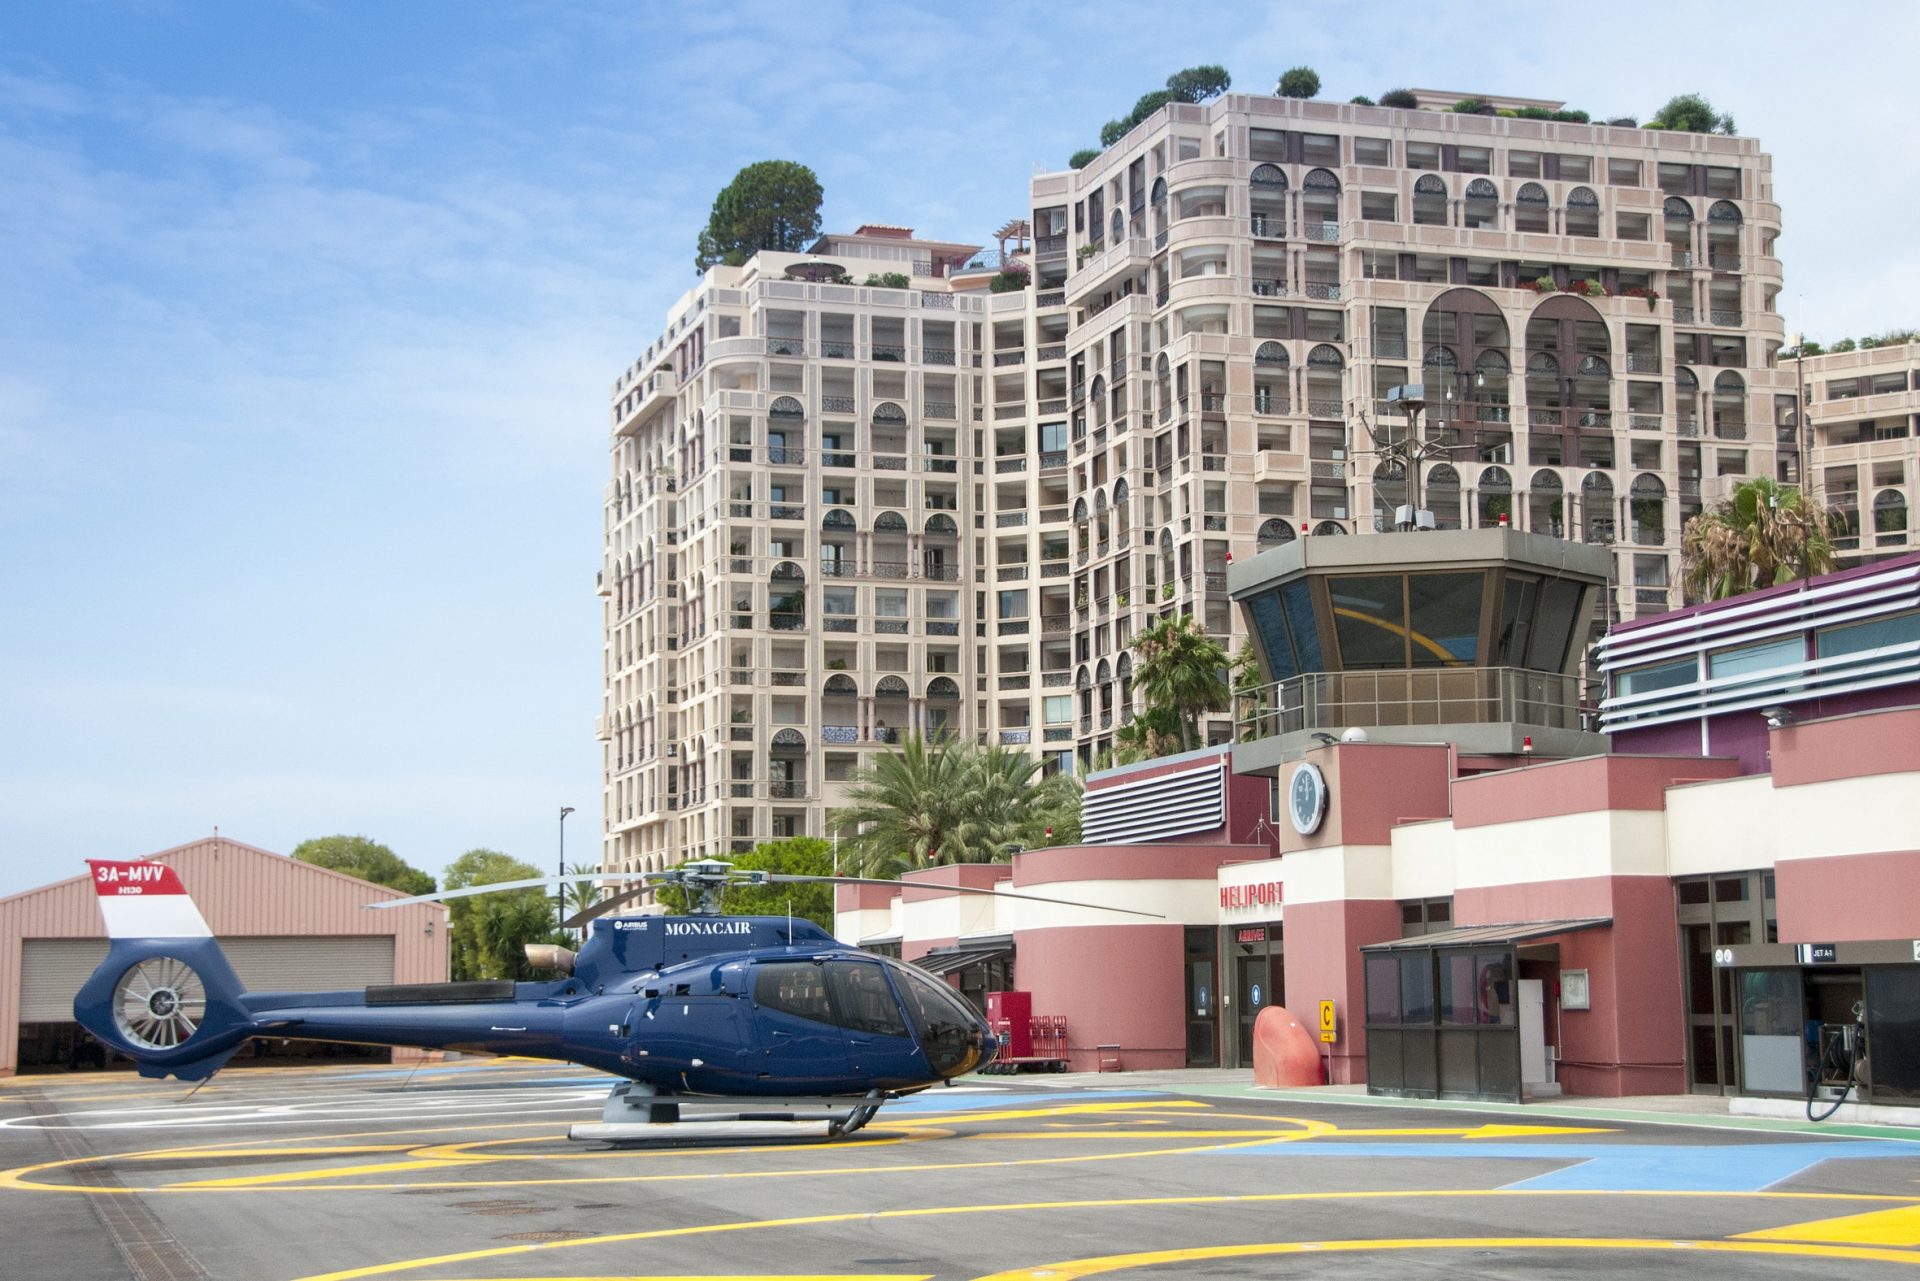 Monaco heliport